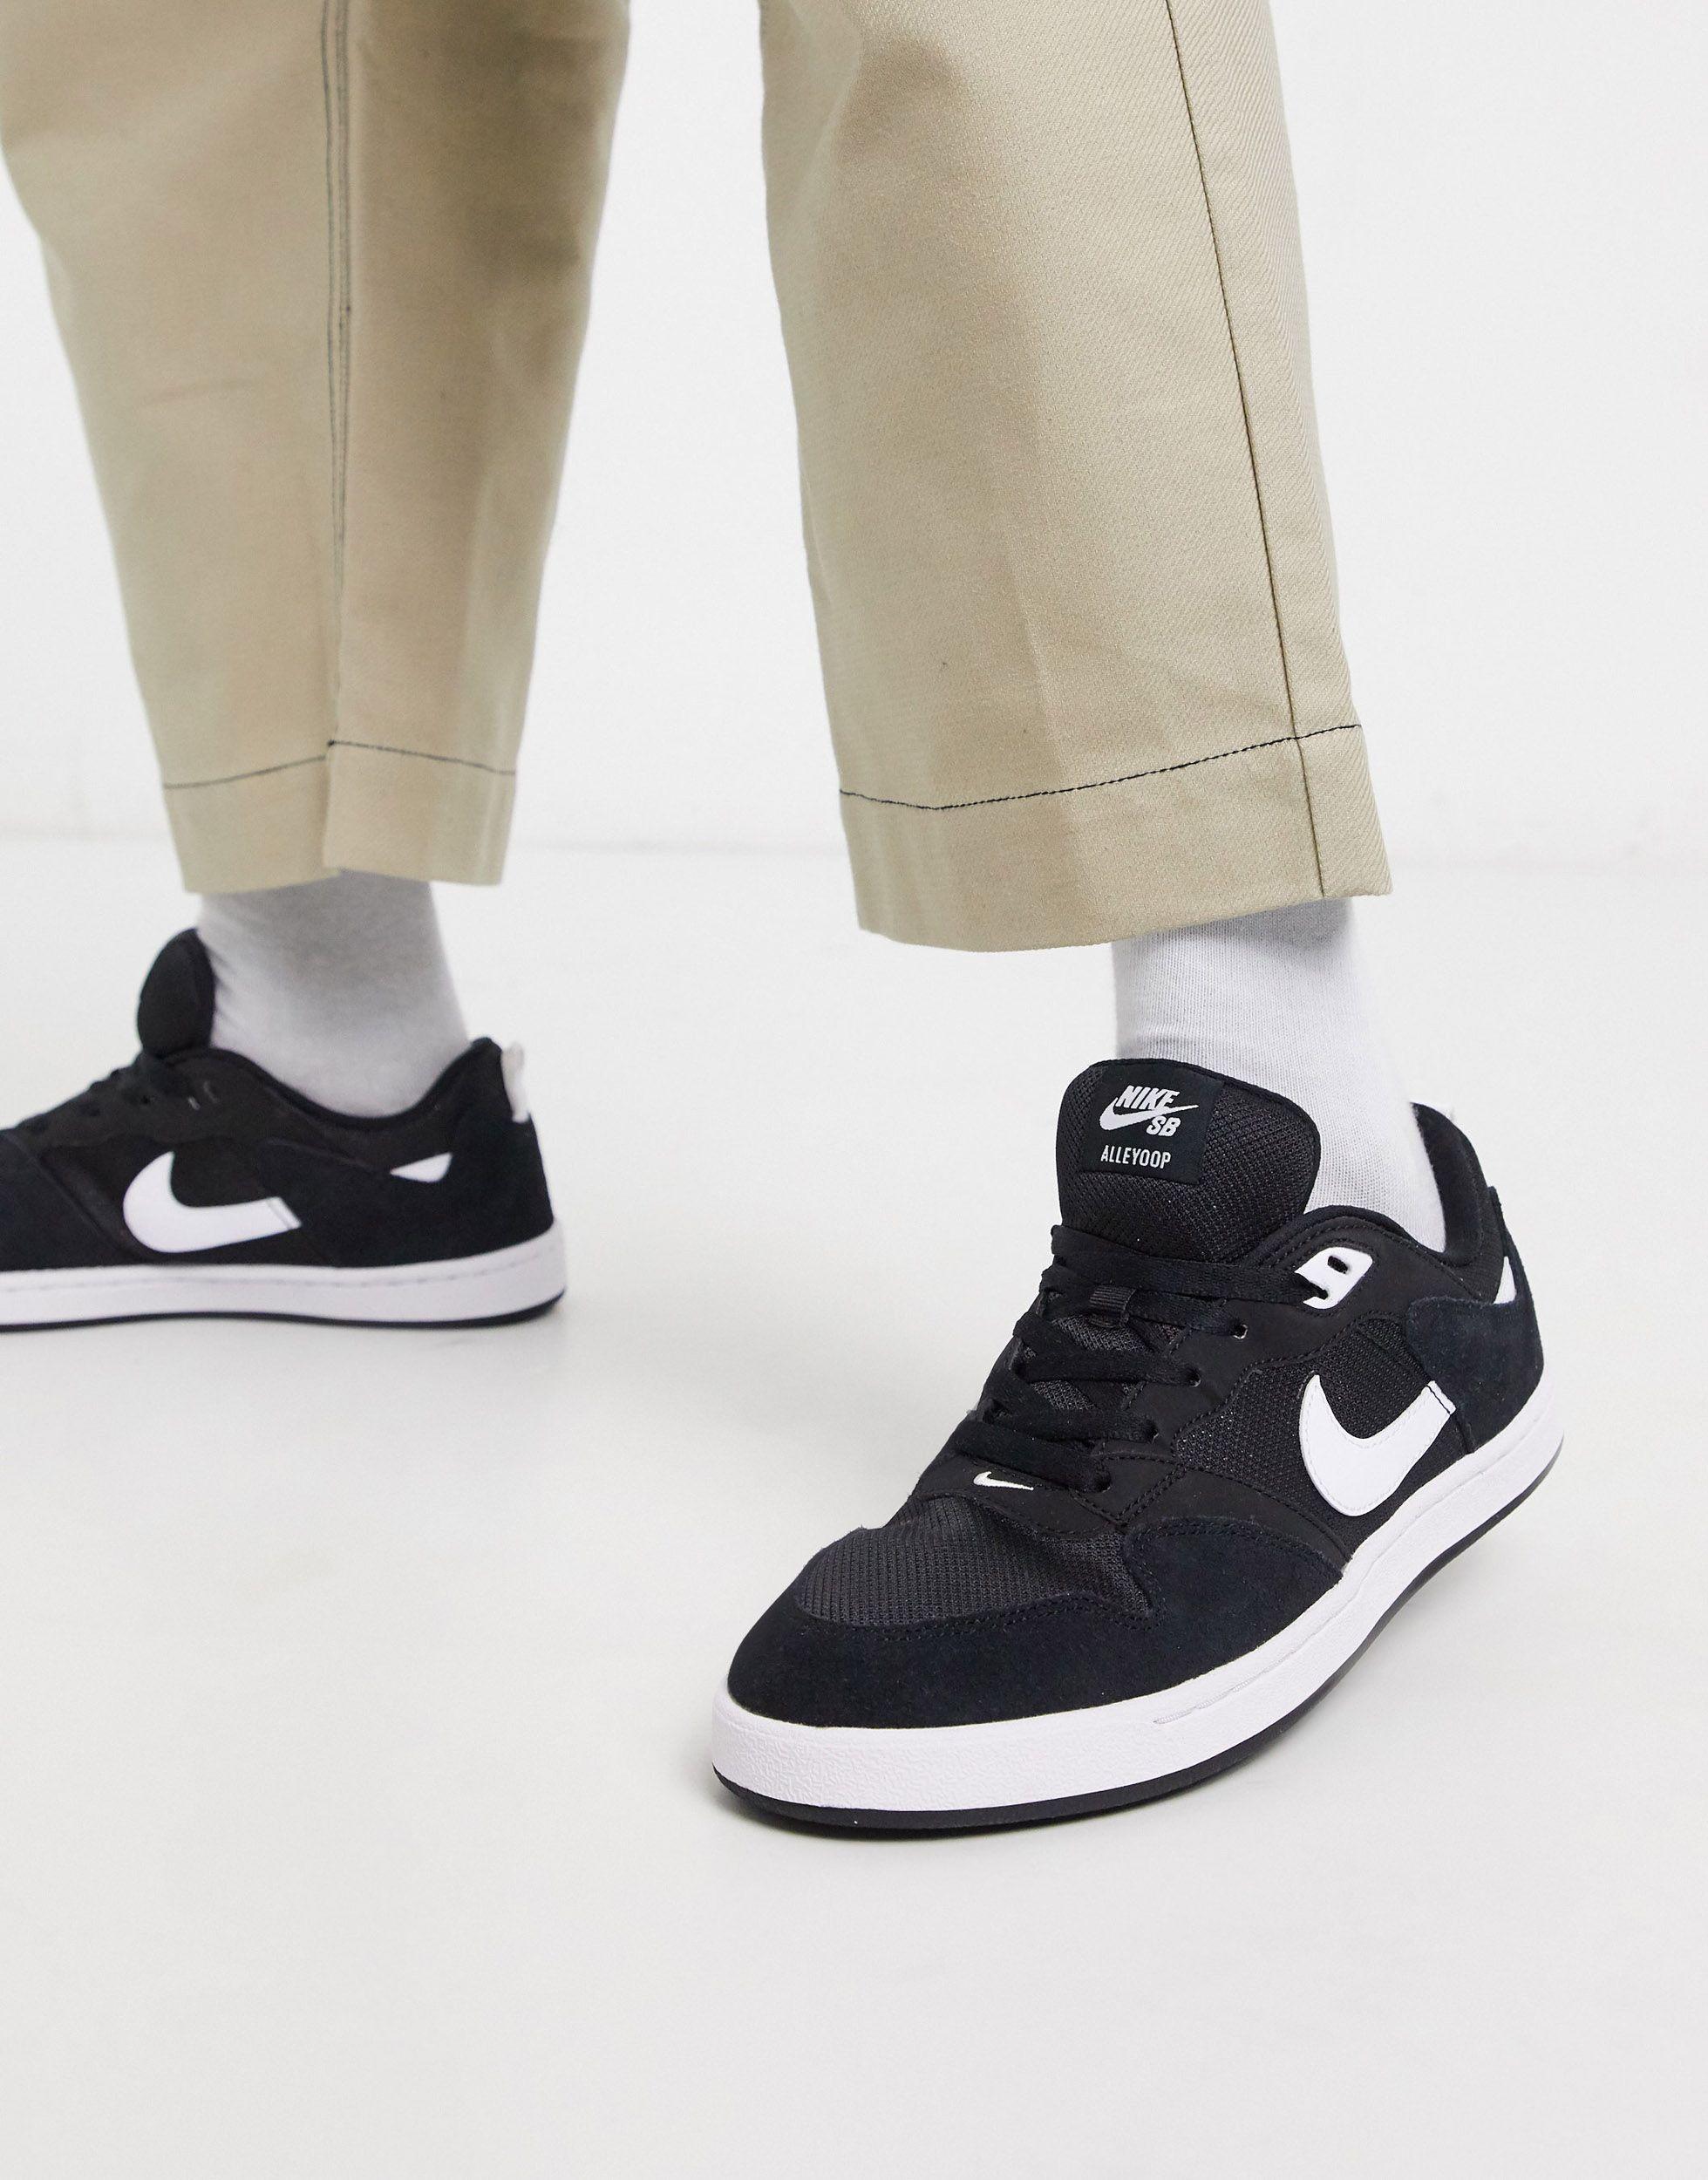 Nike SB Alleyoop Black White Skate Shoes | ubicaciondepersonas.cdmx.gob.mx